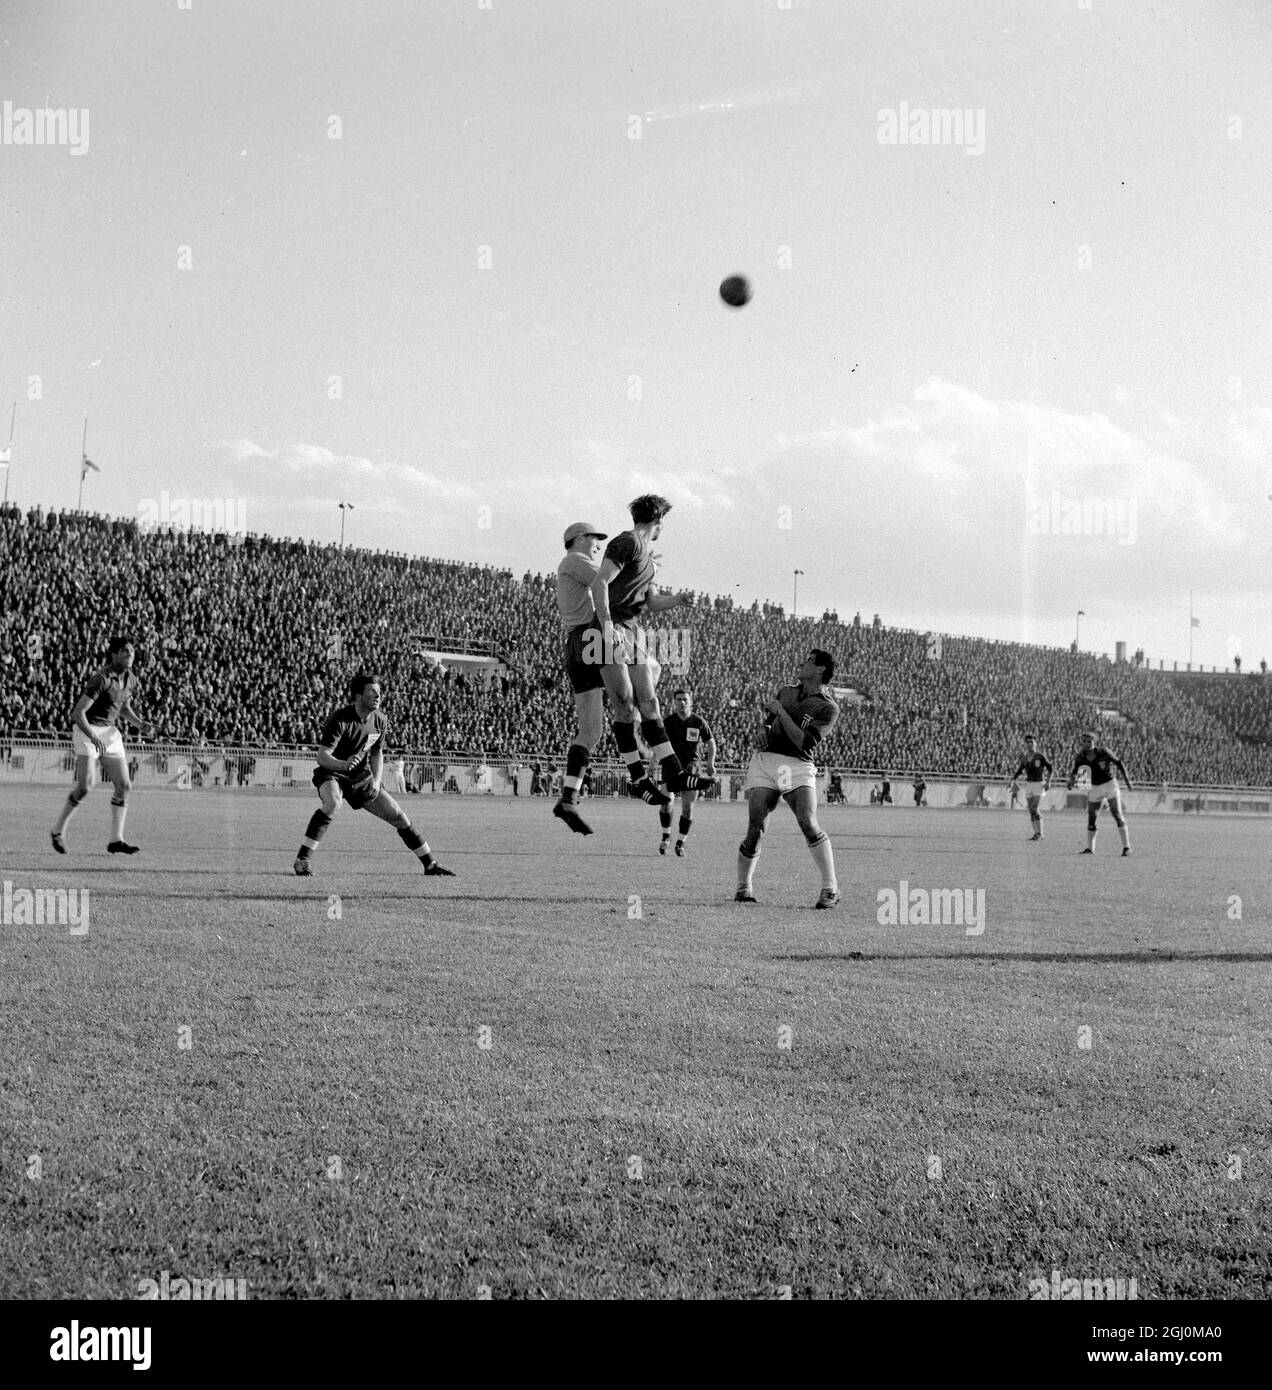 Der Athens Irish Jack Kennedy (mit Mütze), Torwart der britischen Amateurfußballmannschaft beim olympischen Qualifikationsspiel in Tokio gegen Griechenland in Athen. Griechenland gewann vier Tore zu einem. 9. April 1964 Stockfoto